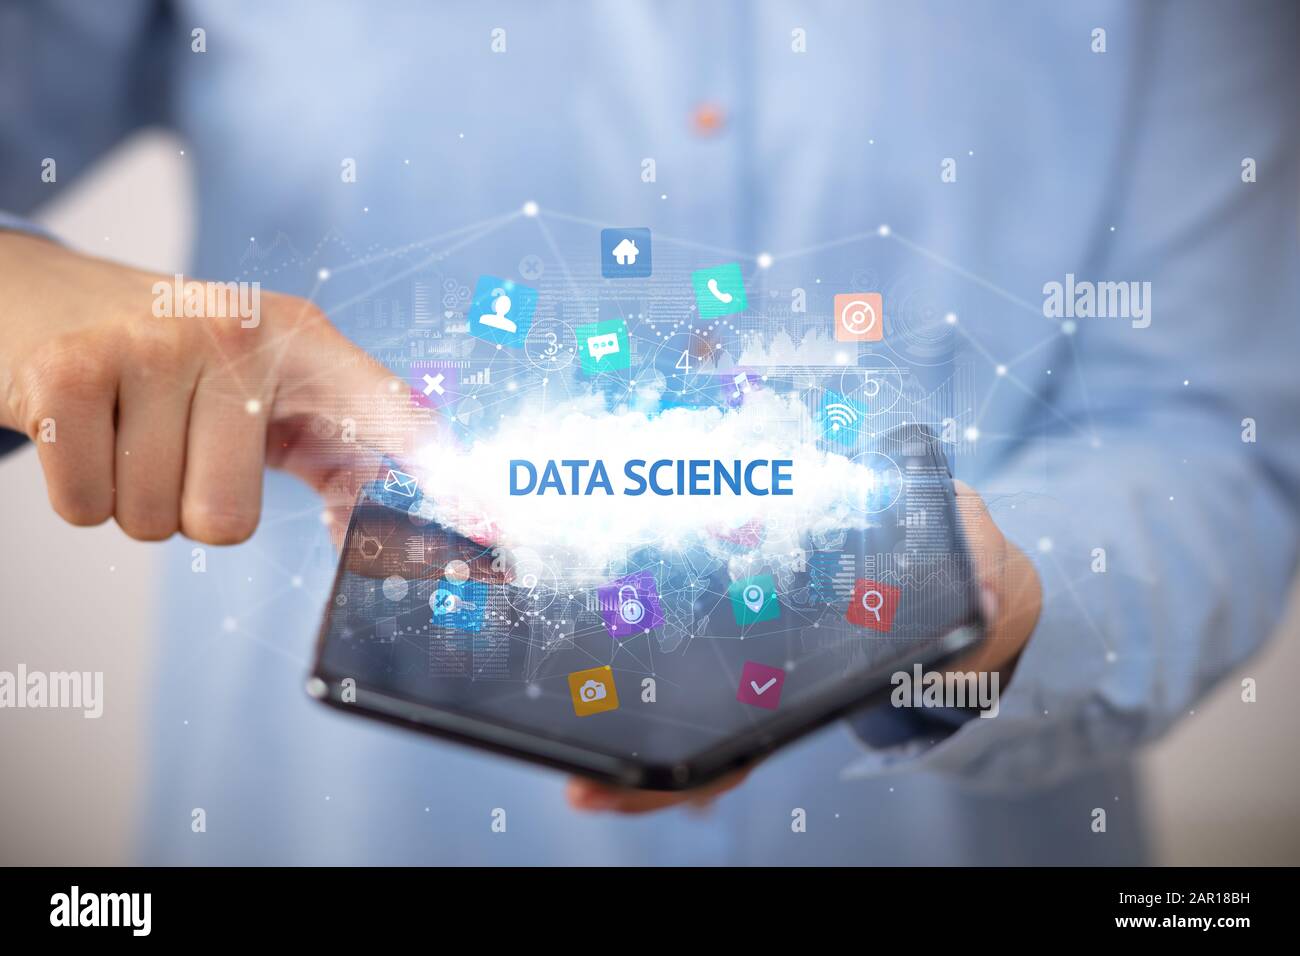 Empresario sosteniendo un smartphone plegable con datos de ciencia, tecnología concepto de inscripción Foto de stock